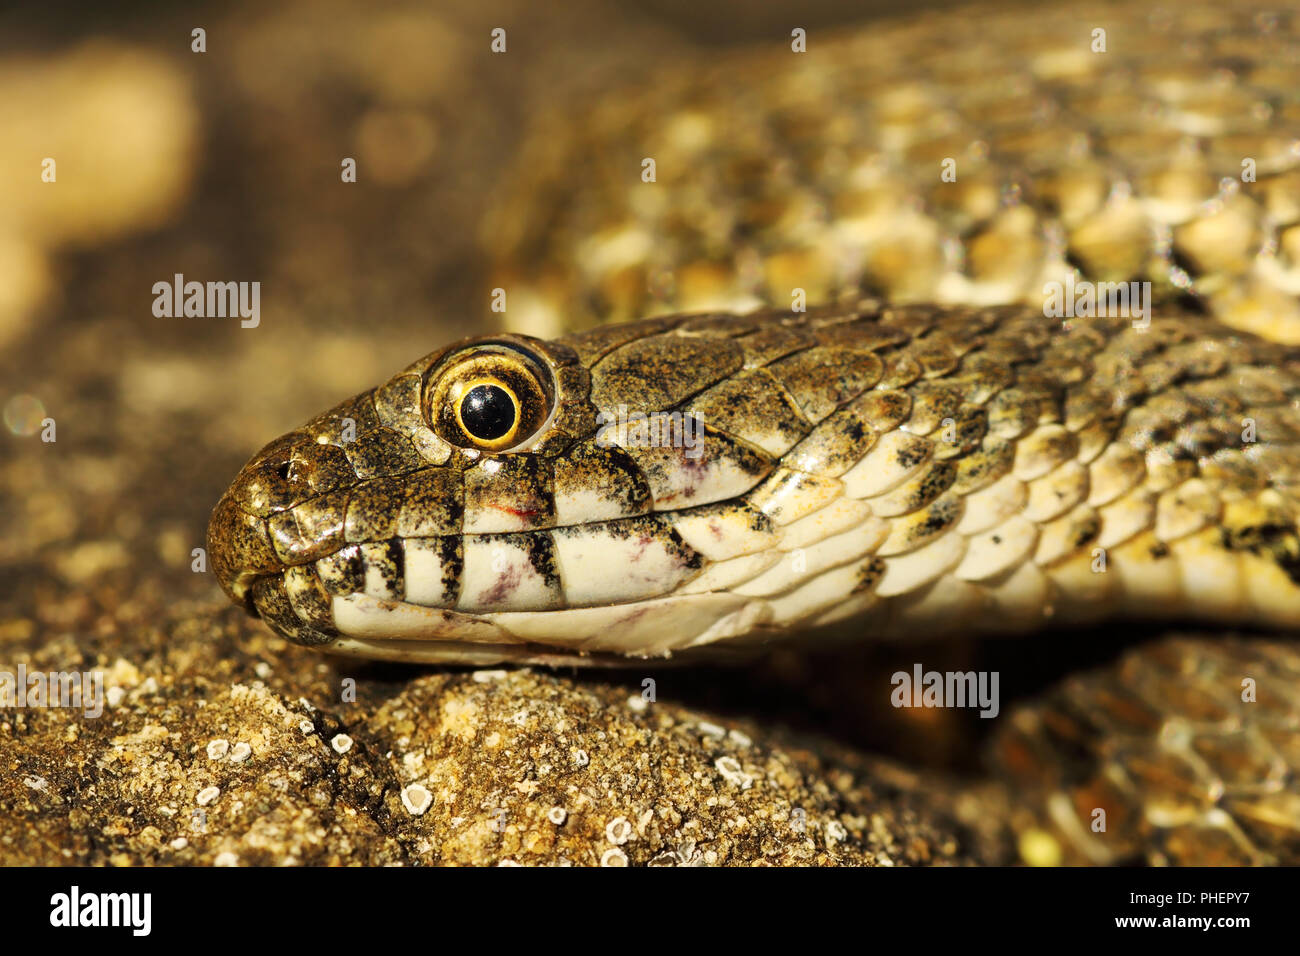 Detalle de la cabeza de serpiente dados ( Natrix tessellata ) Foto de stock